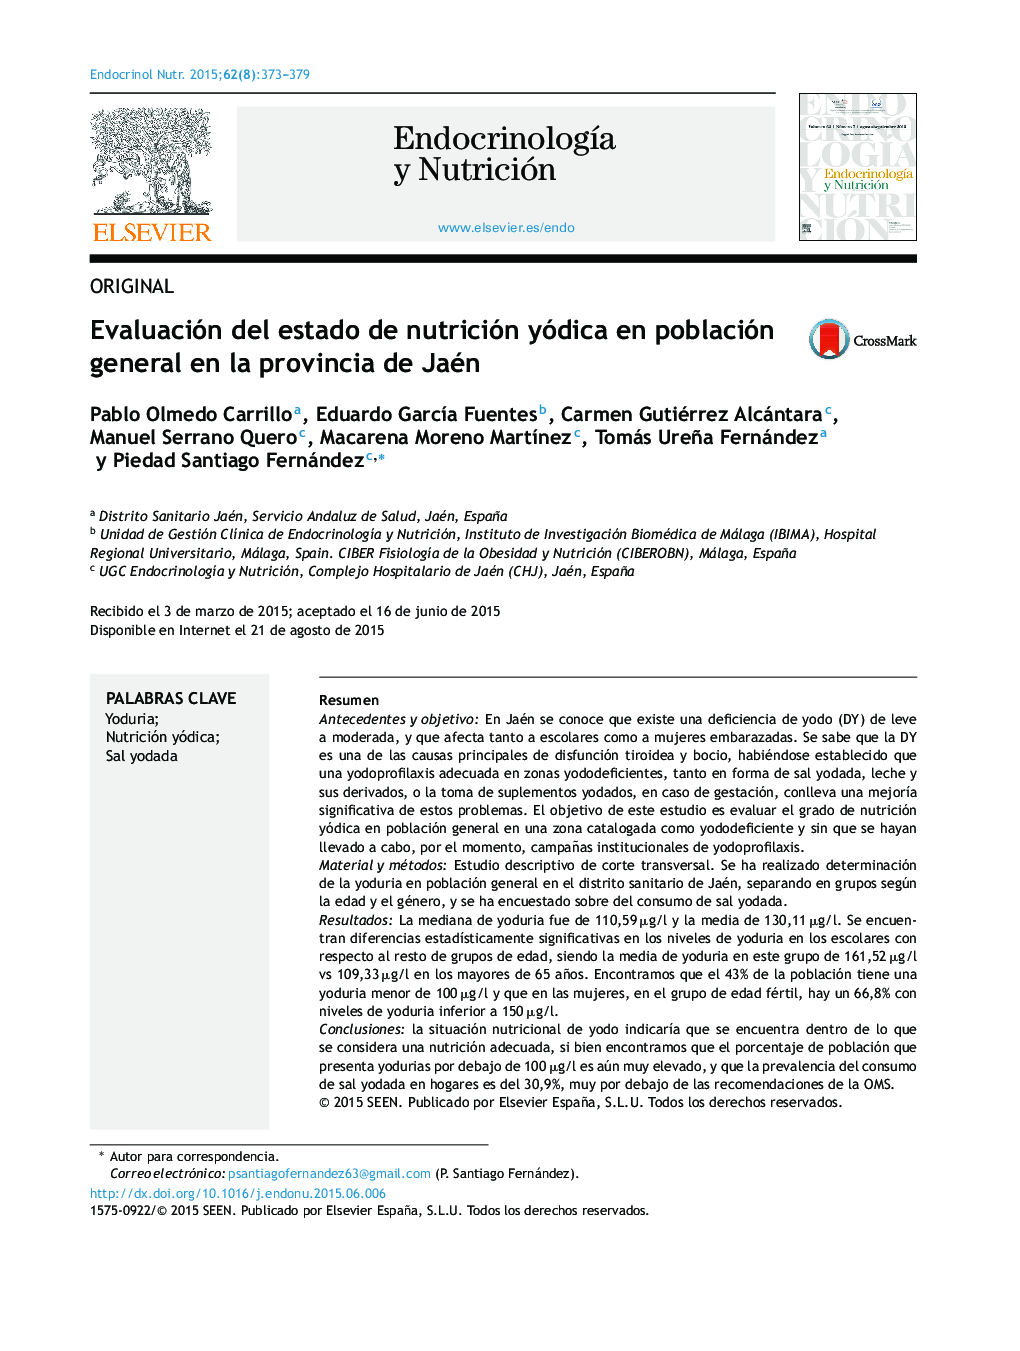 Evaluación del estado de nutrición yódica en población general en la provincia de Jaén